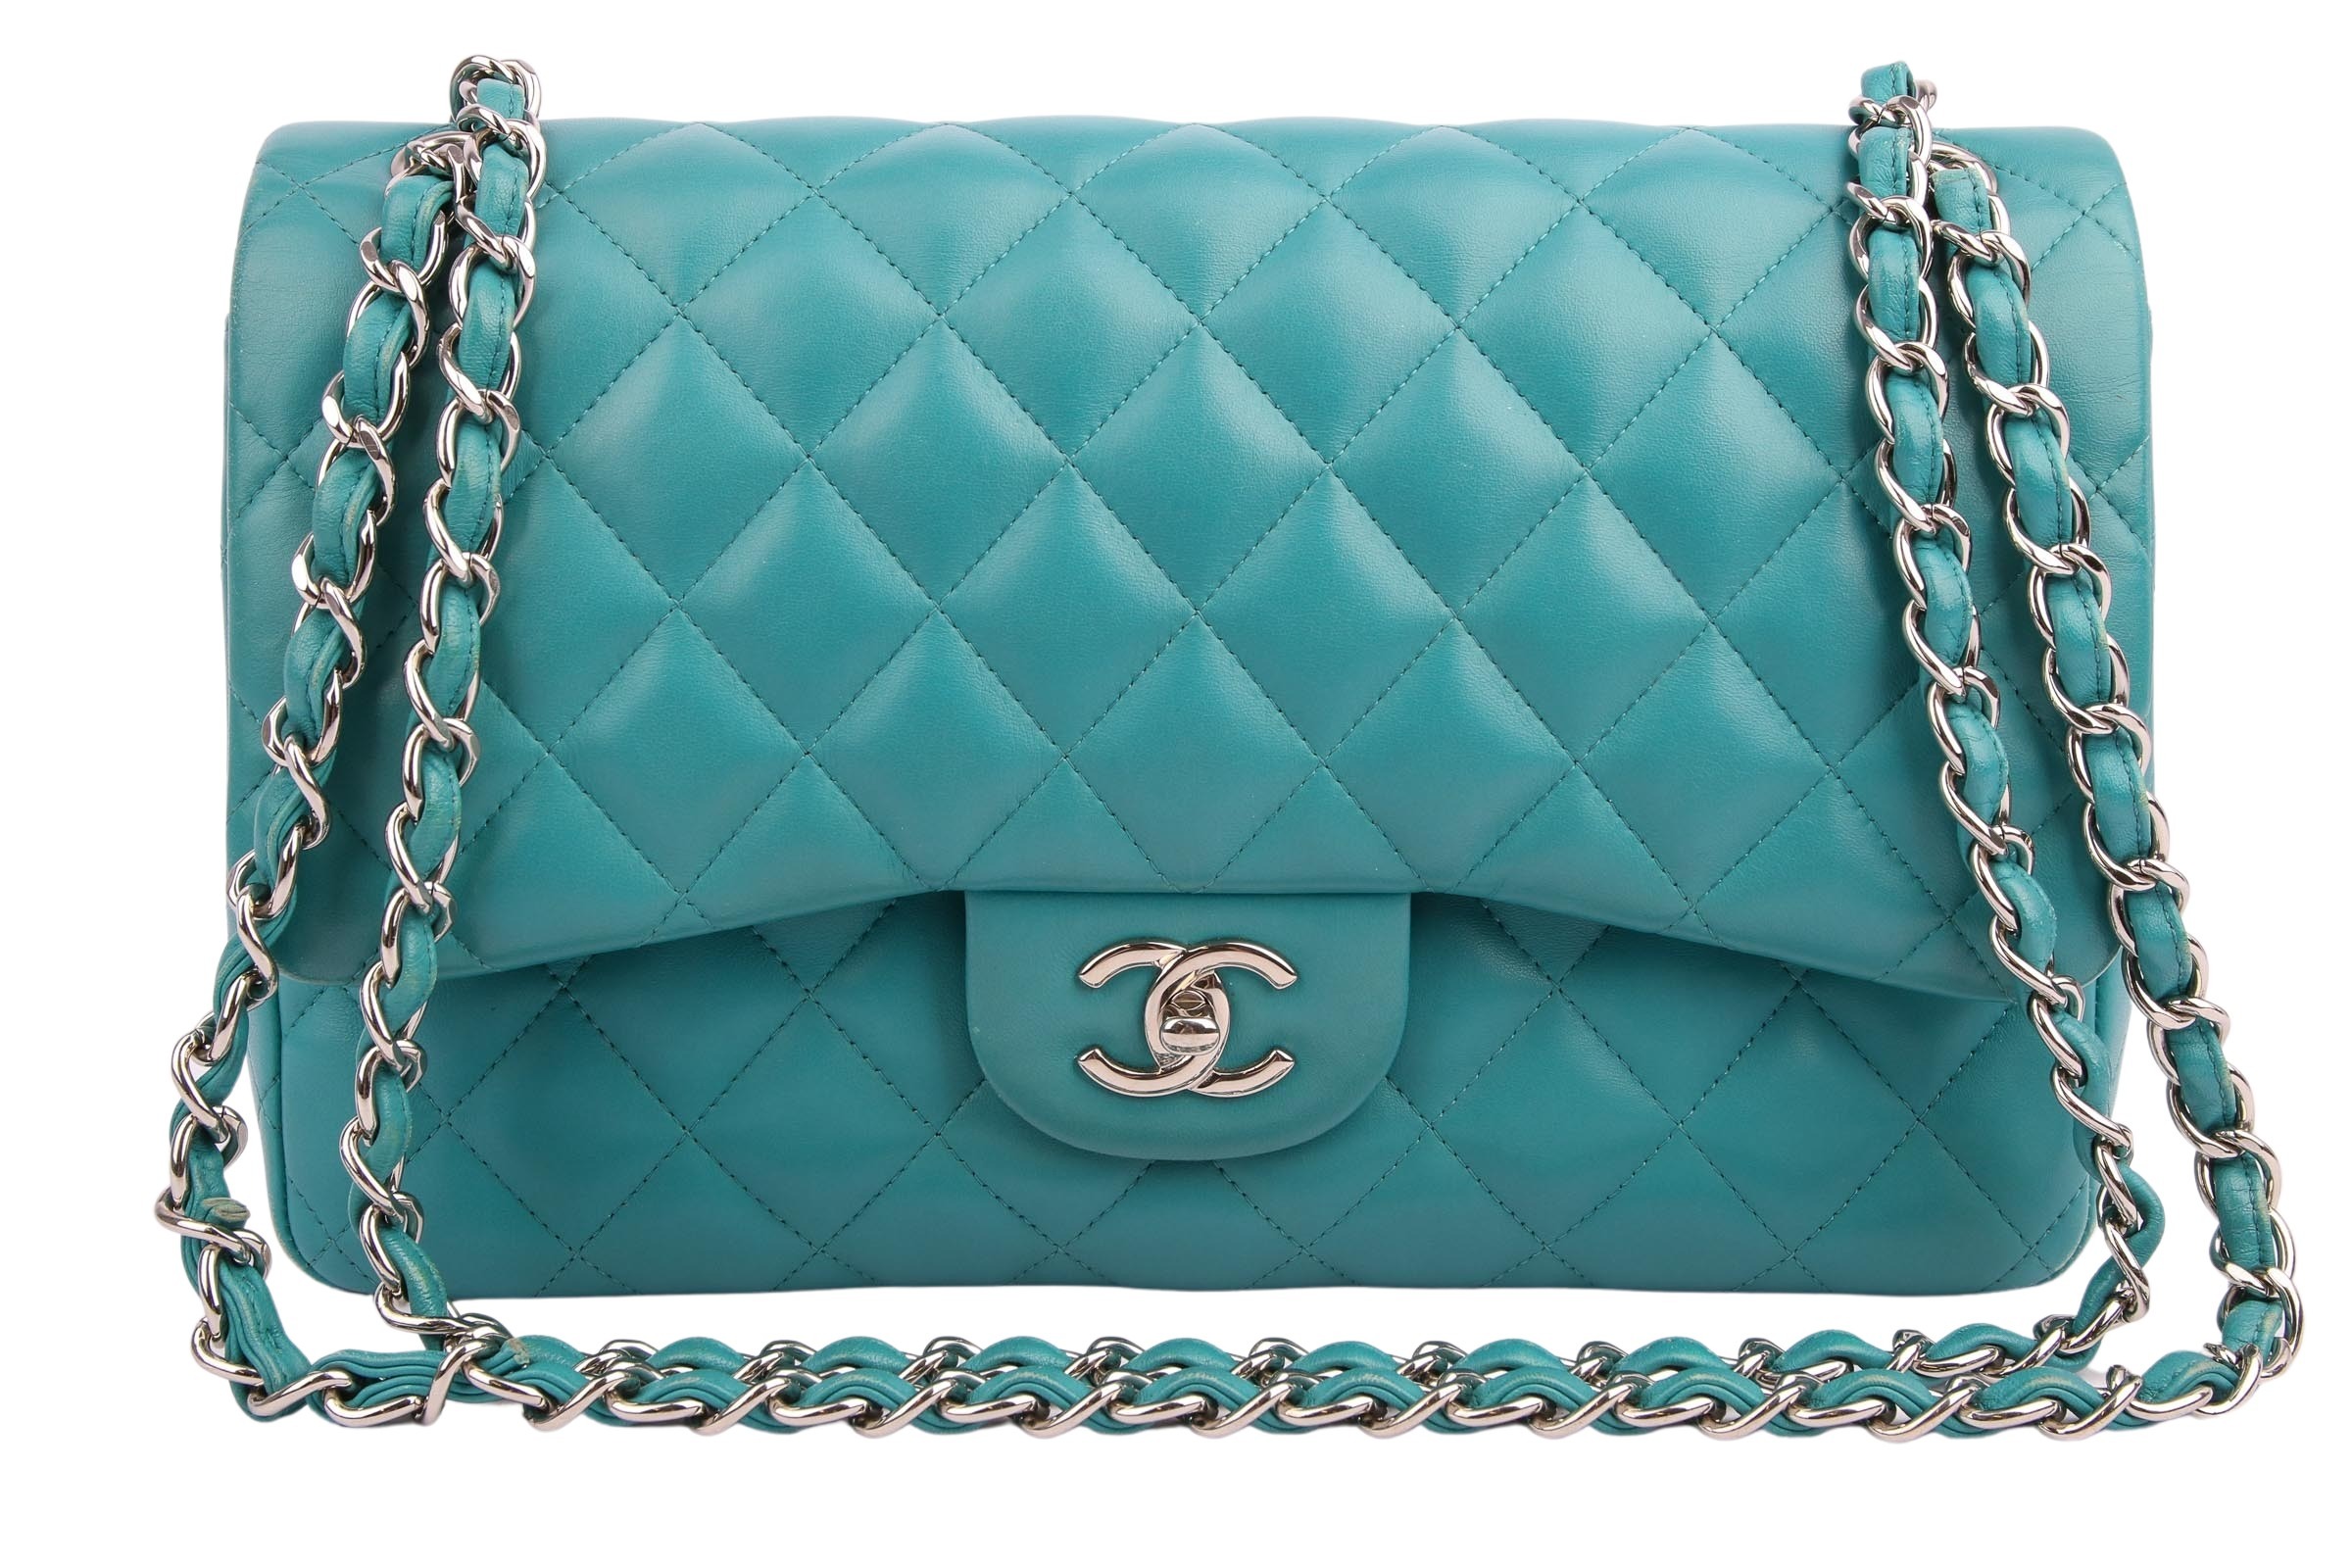 Chanel Double Flap Bag Jumbo Turquoise